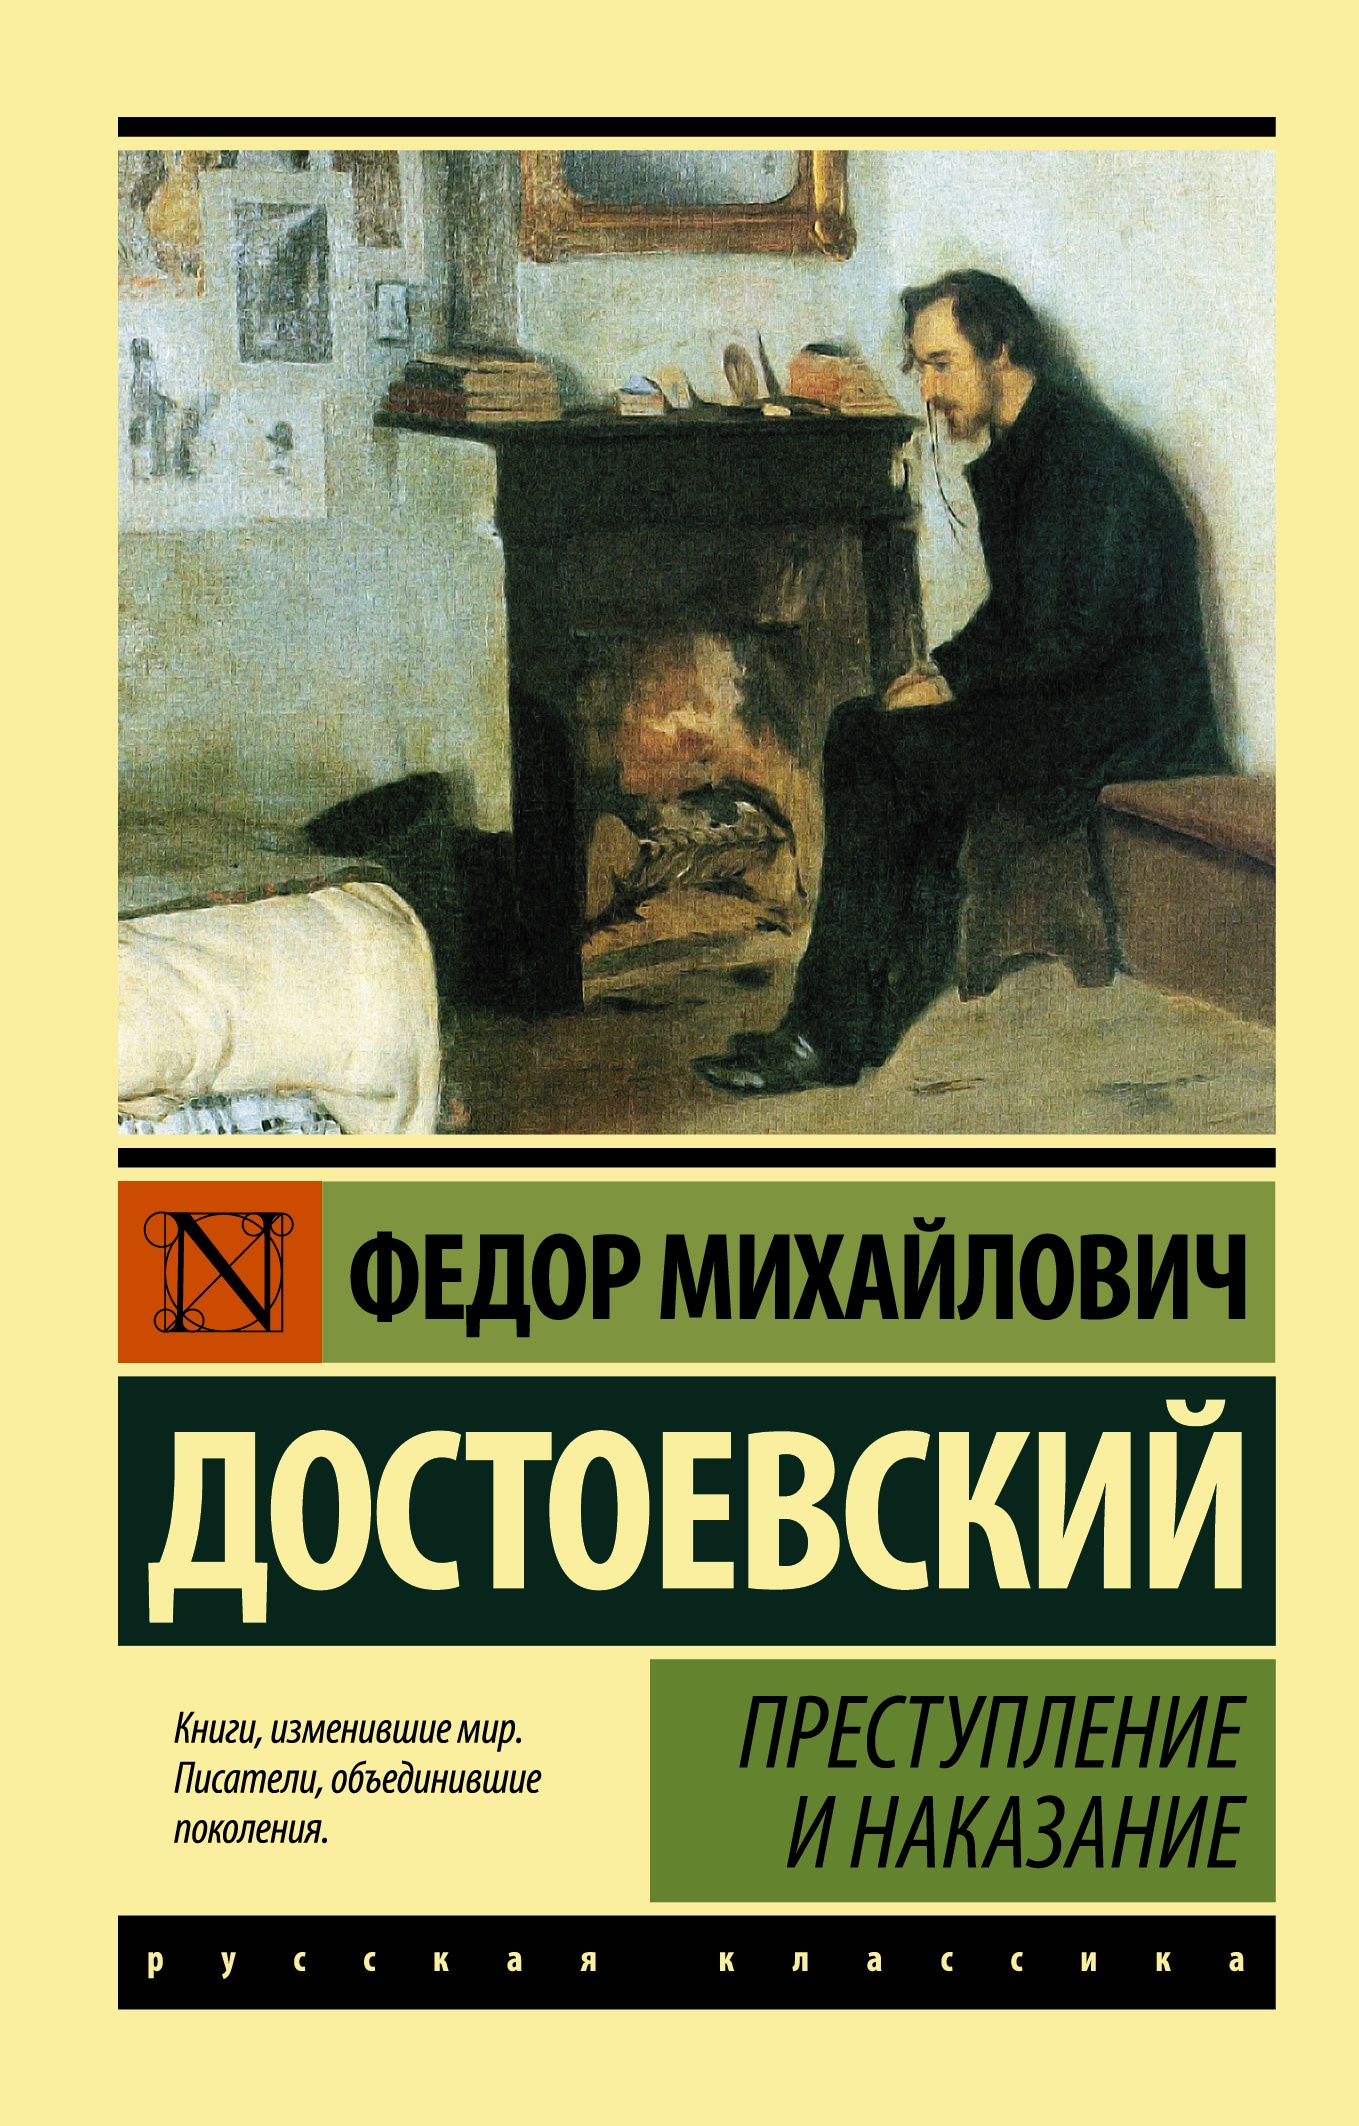 Книга «Преступление и наказание» Федор Достоевский — 24 сентября 2021 г.